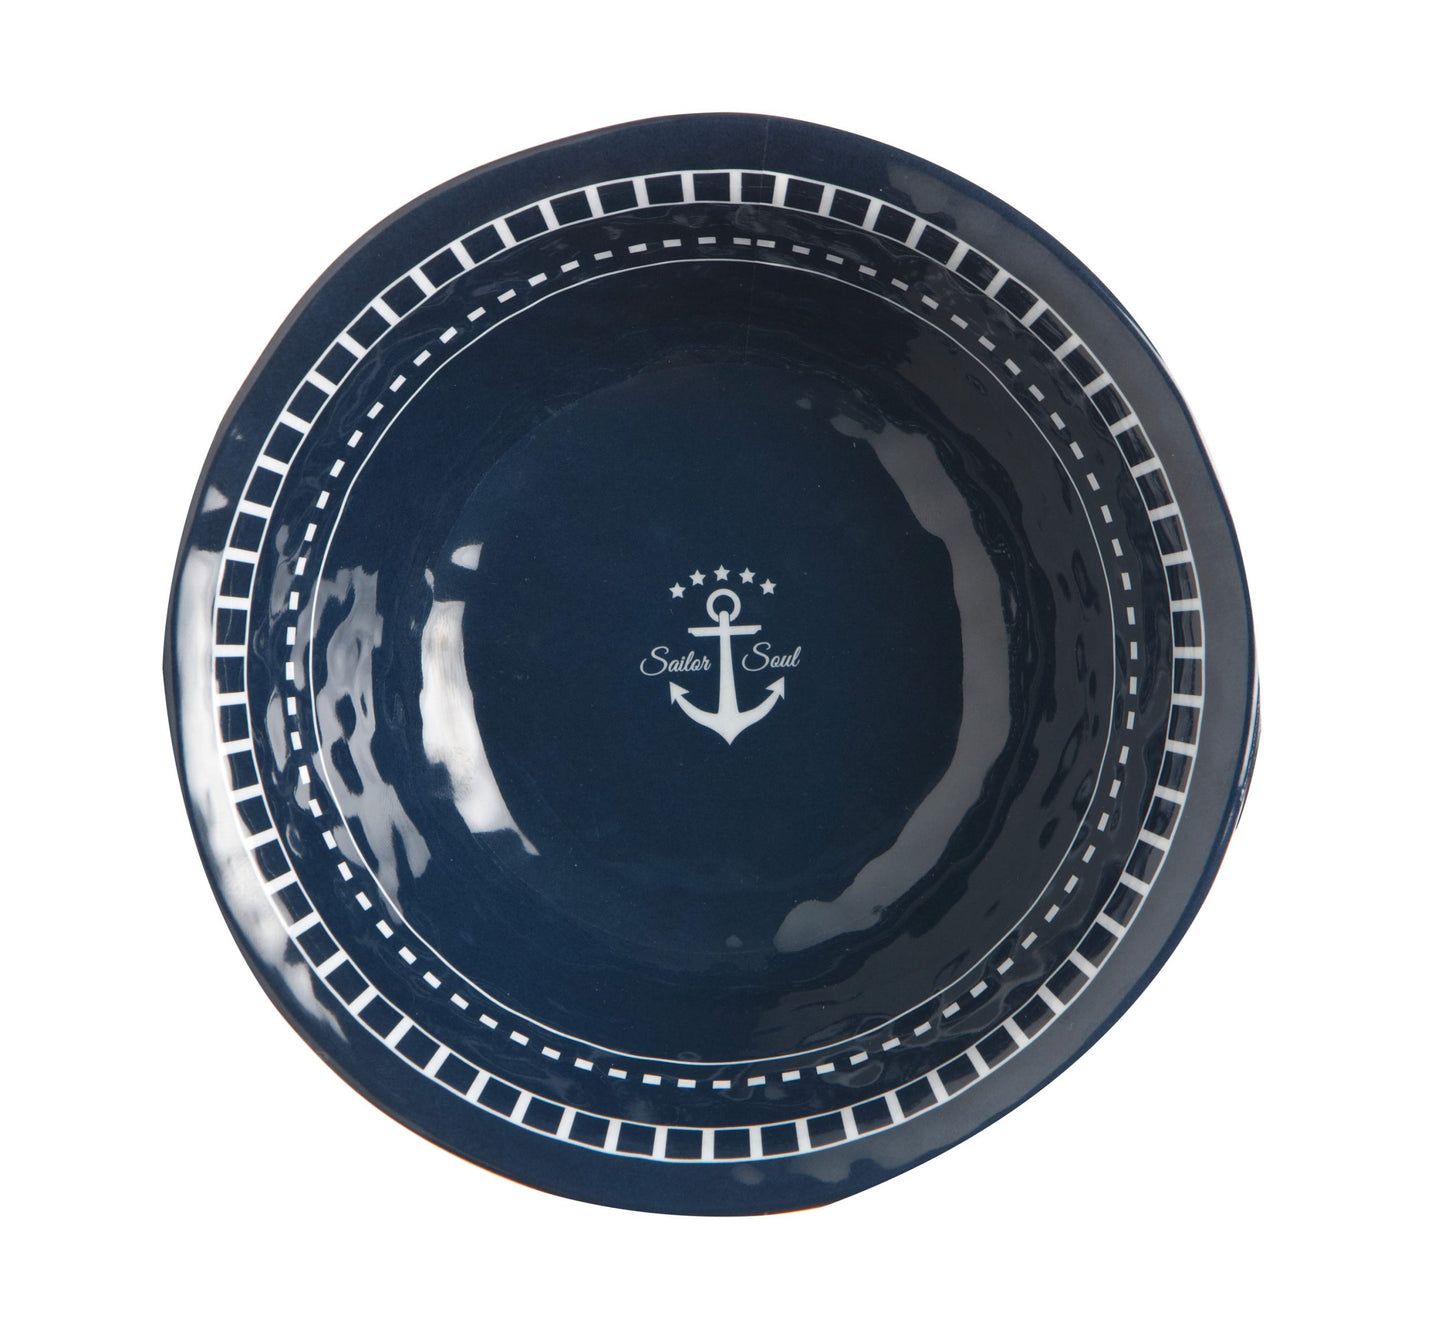 Sailor Soul Tableware Pack